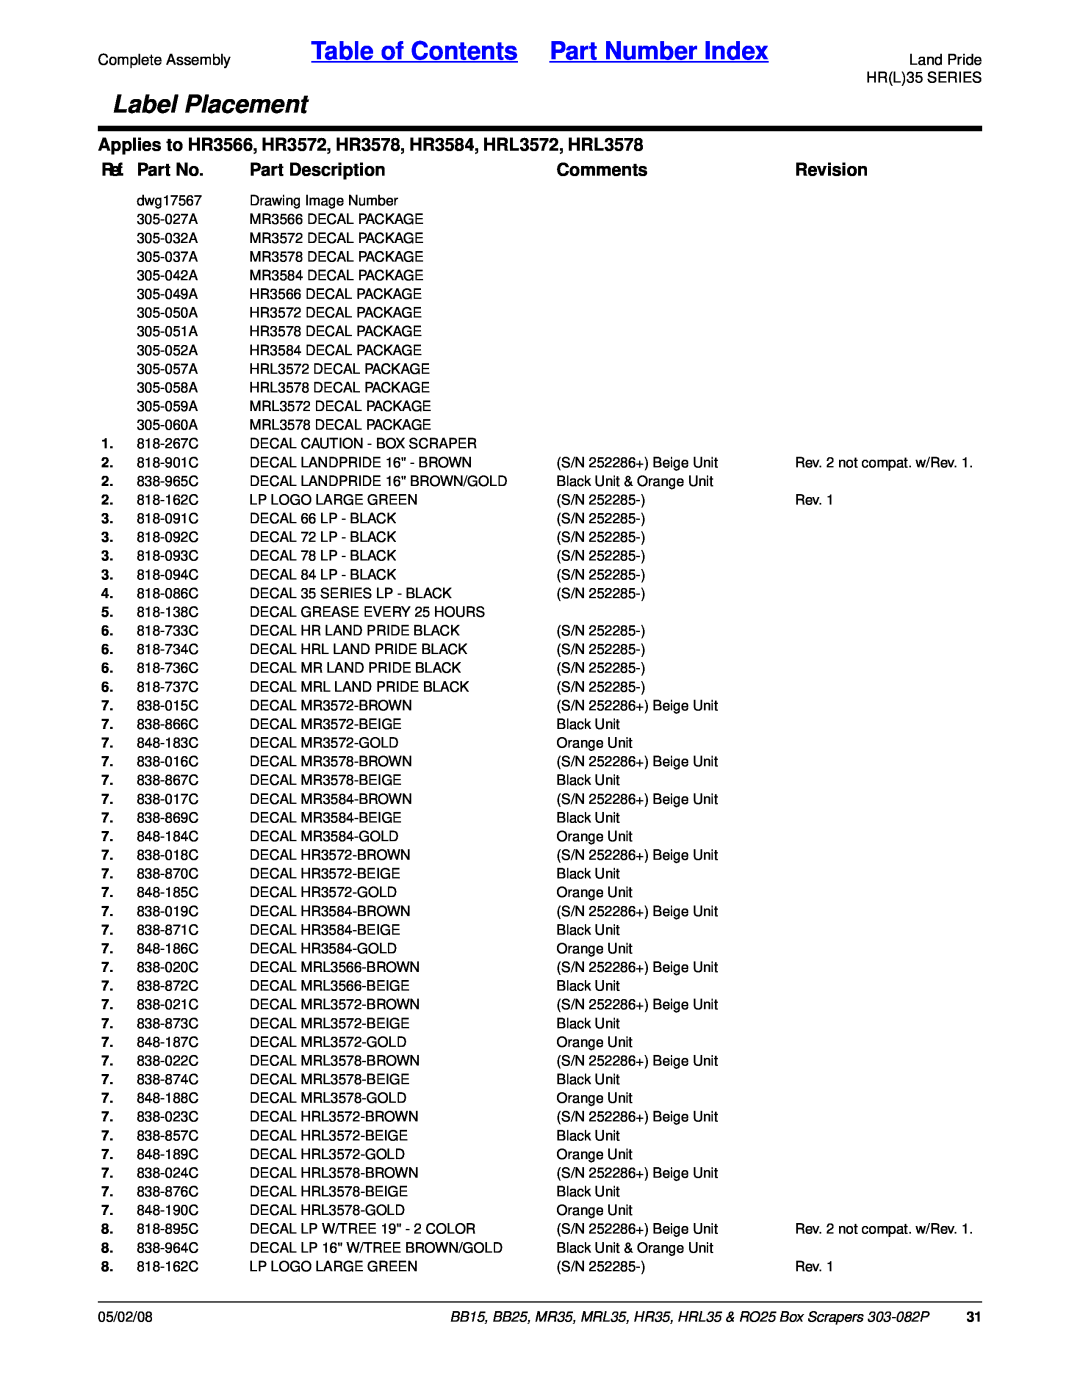 Land Pride MRL35 Table of Contents Part Number Index, Label Placement, Ref. Part No, Part Description, Comments, Revision 